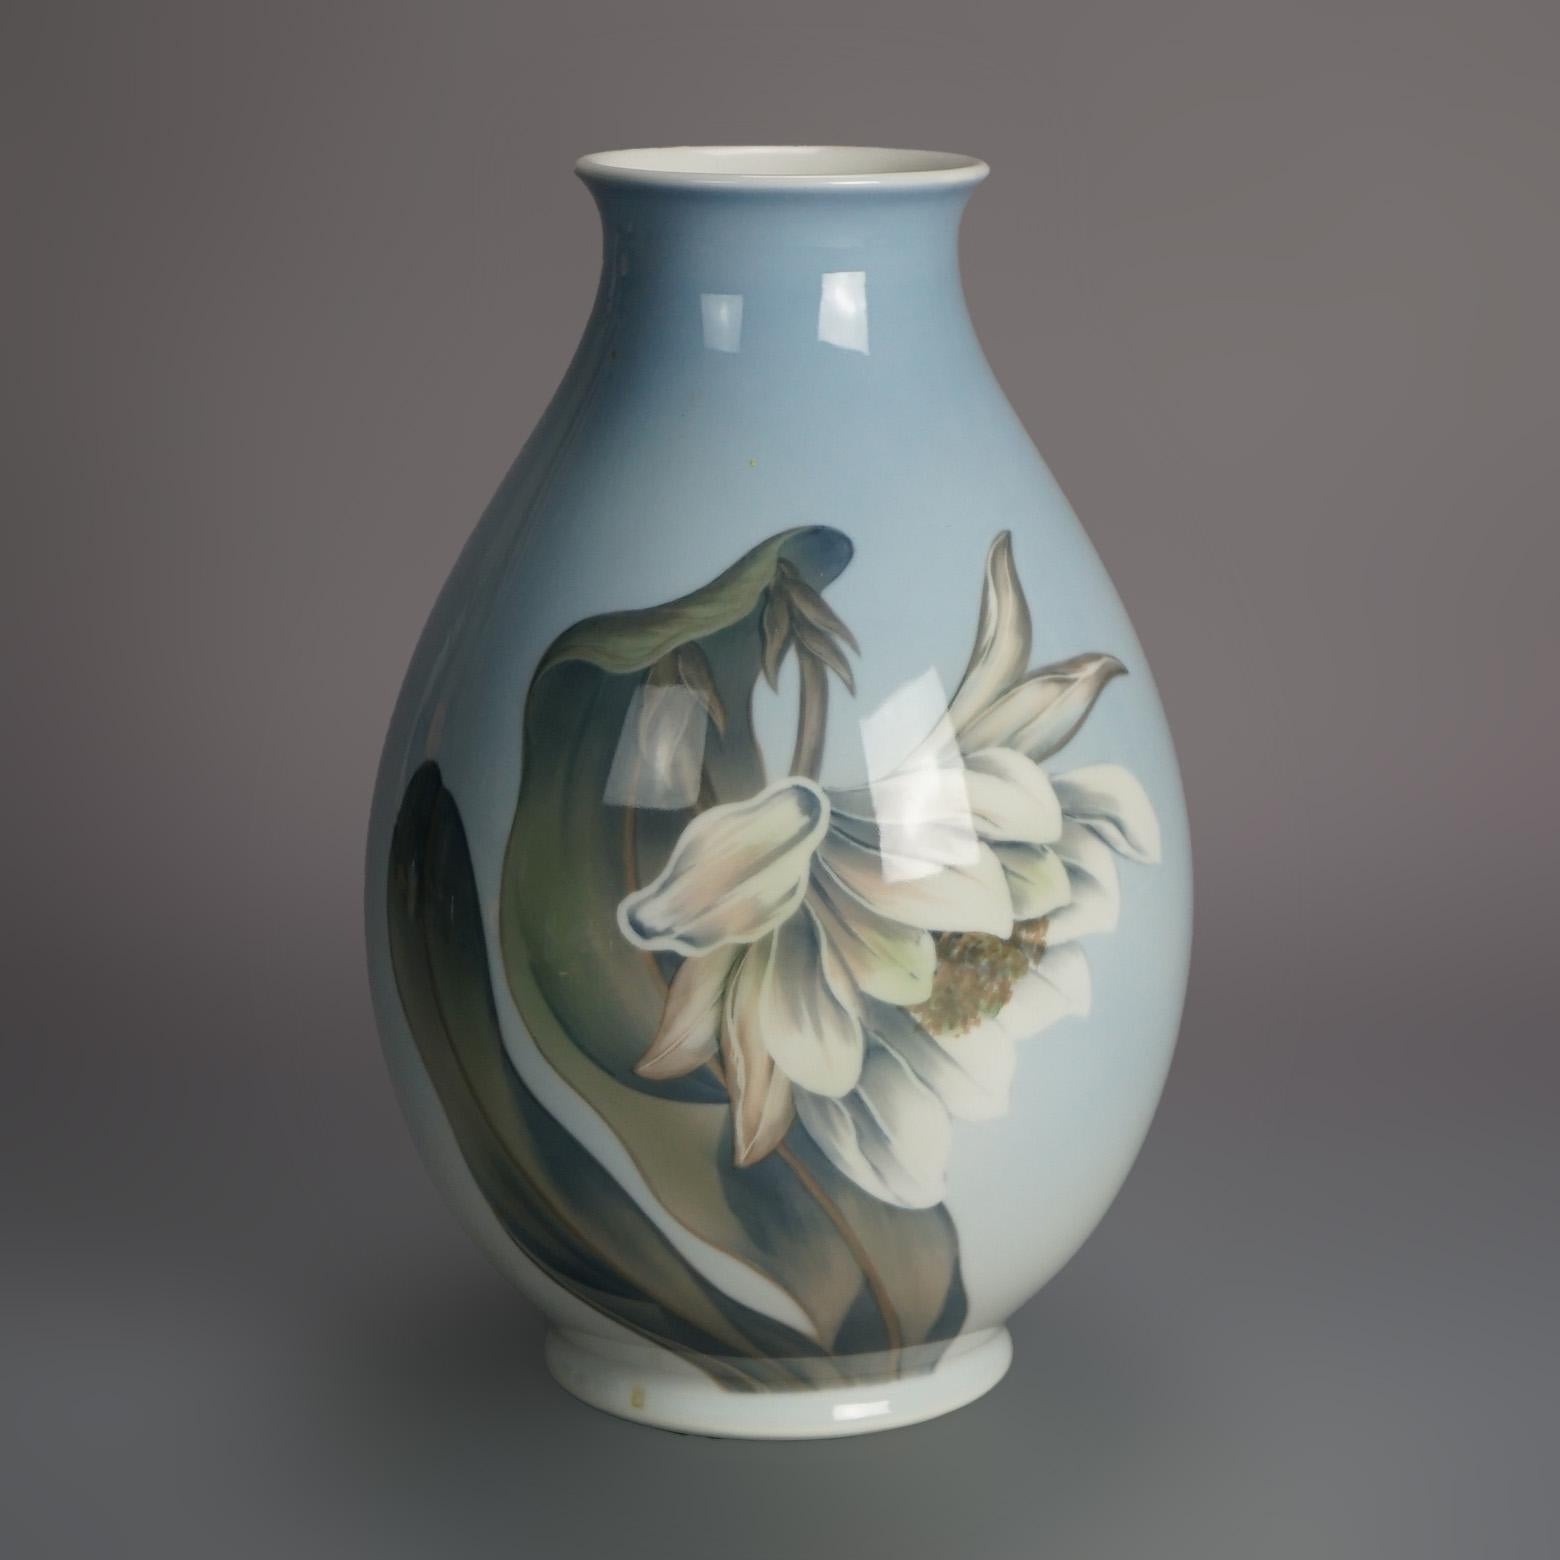 Antike Royal Copenhagen Porzellan Handgemalte Blumenvase mit Schmetterlingen C1930

Maße - 11,25 